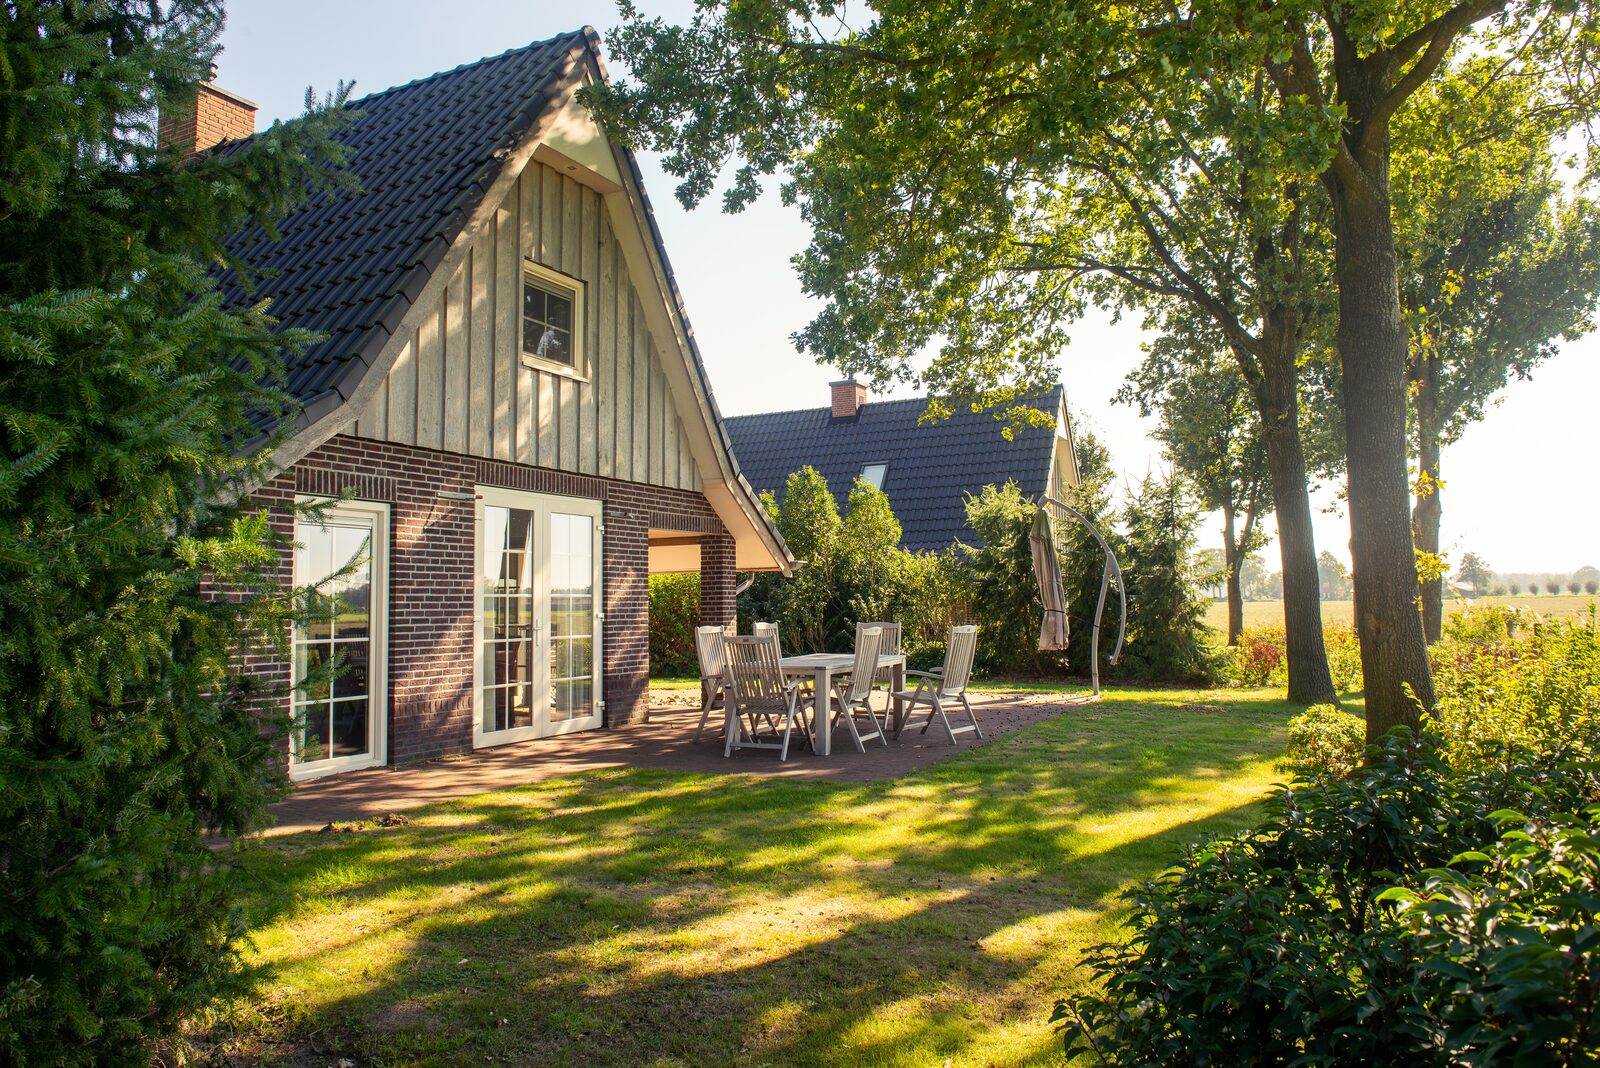 Vacation villas near Zwolle